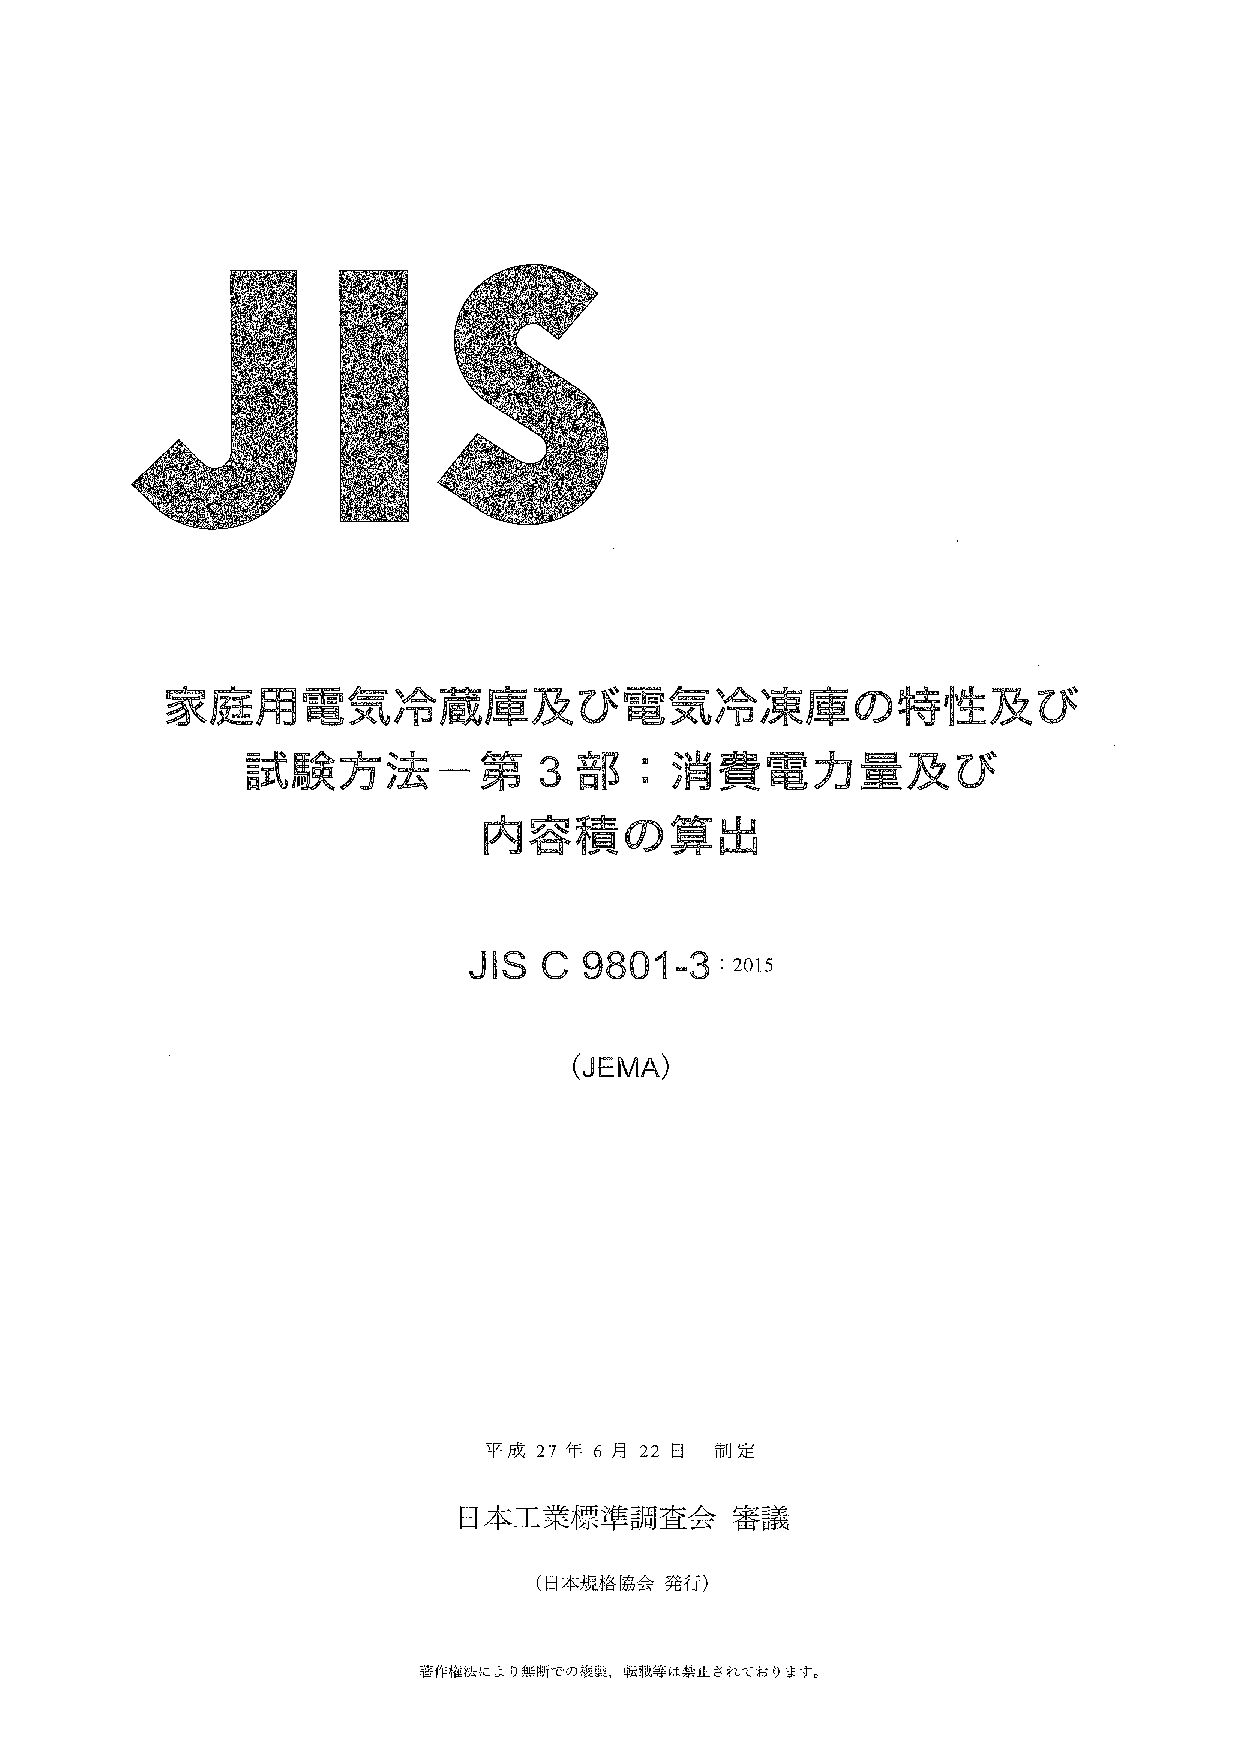 JIS C 9801-3:2015封面图